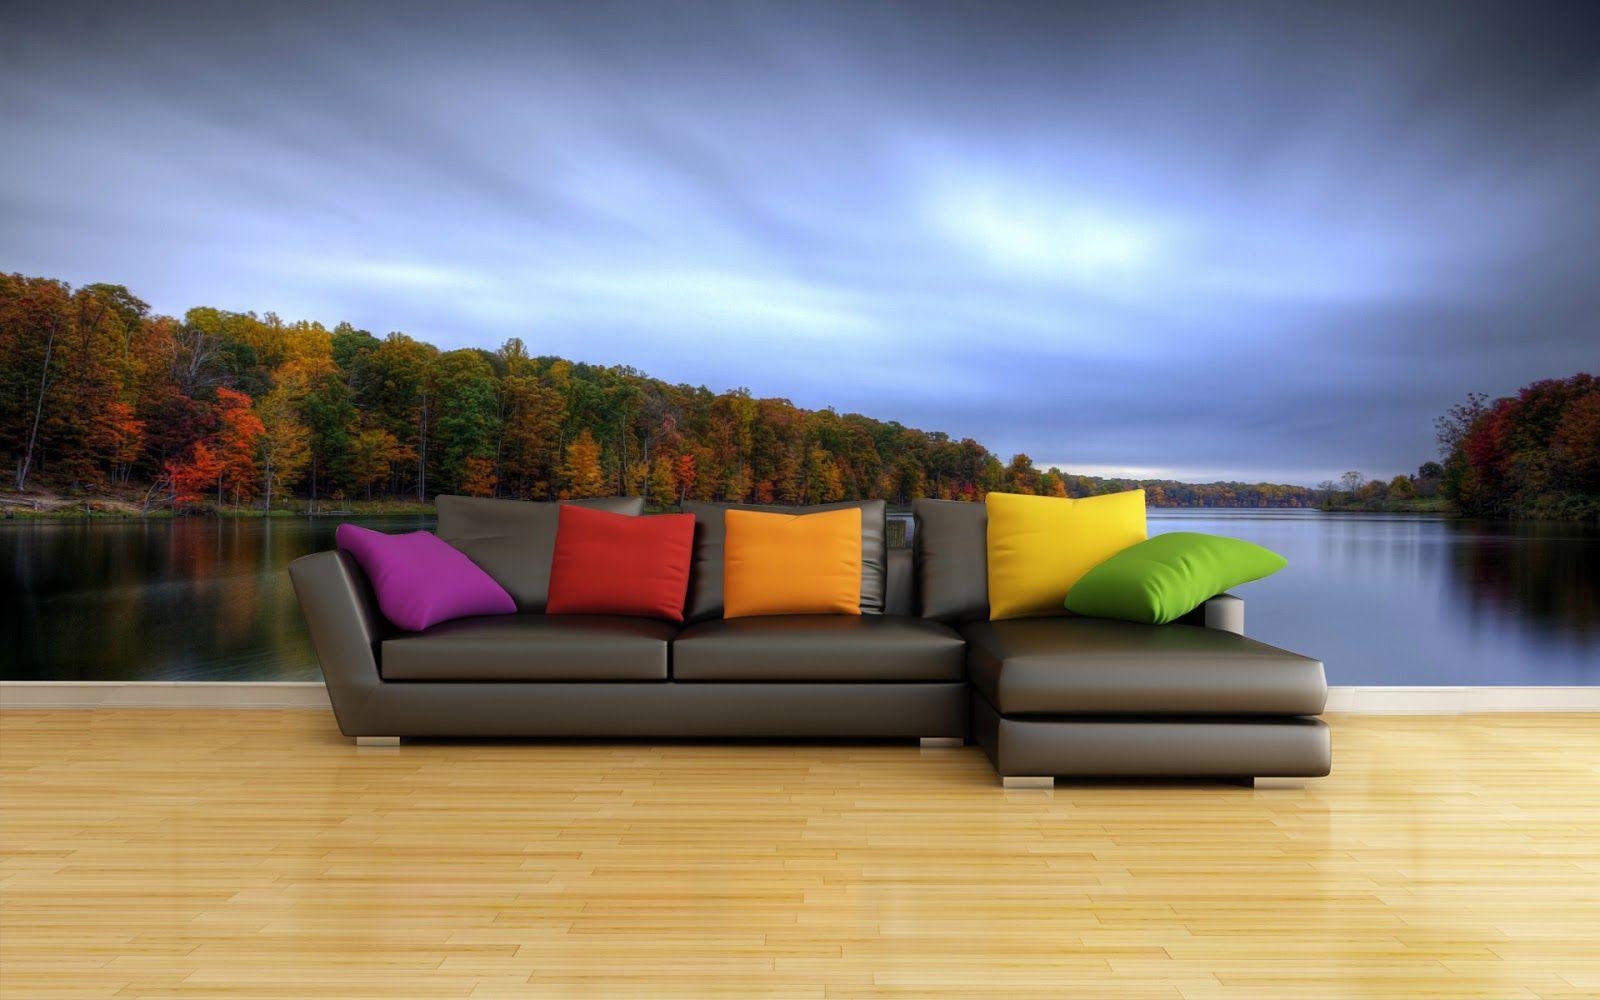 Sofa 1080P, 2K, 4K, 5K HD wallpapers free download | Wallpaper Flare